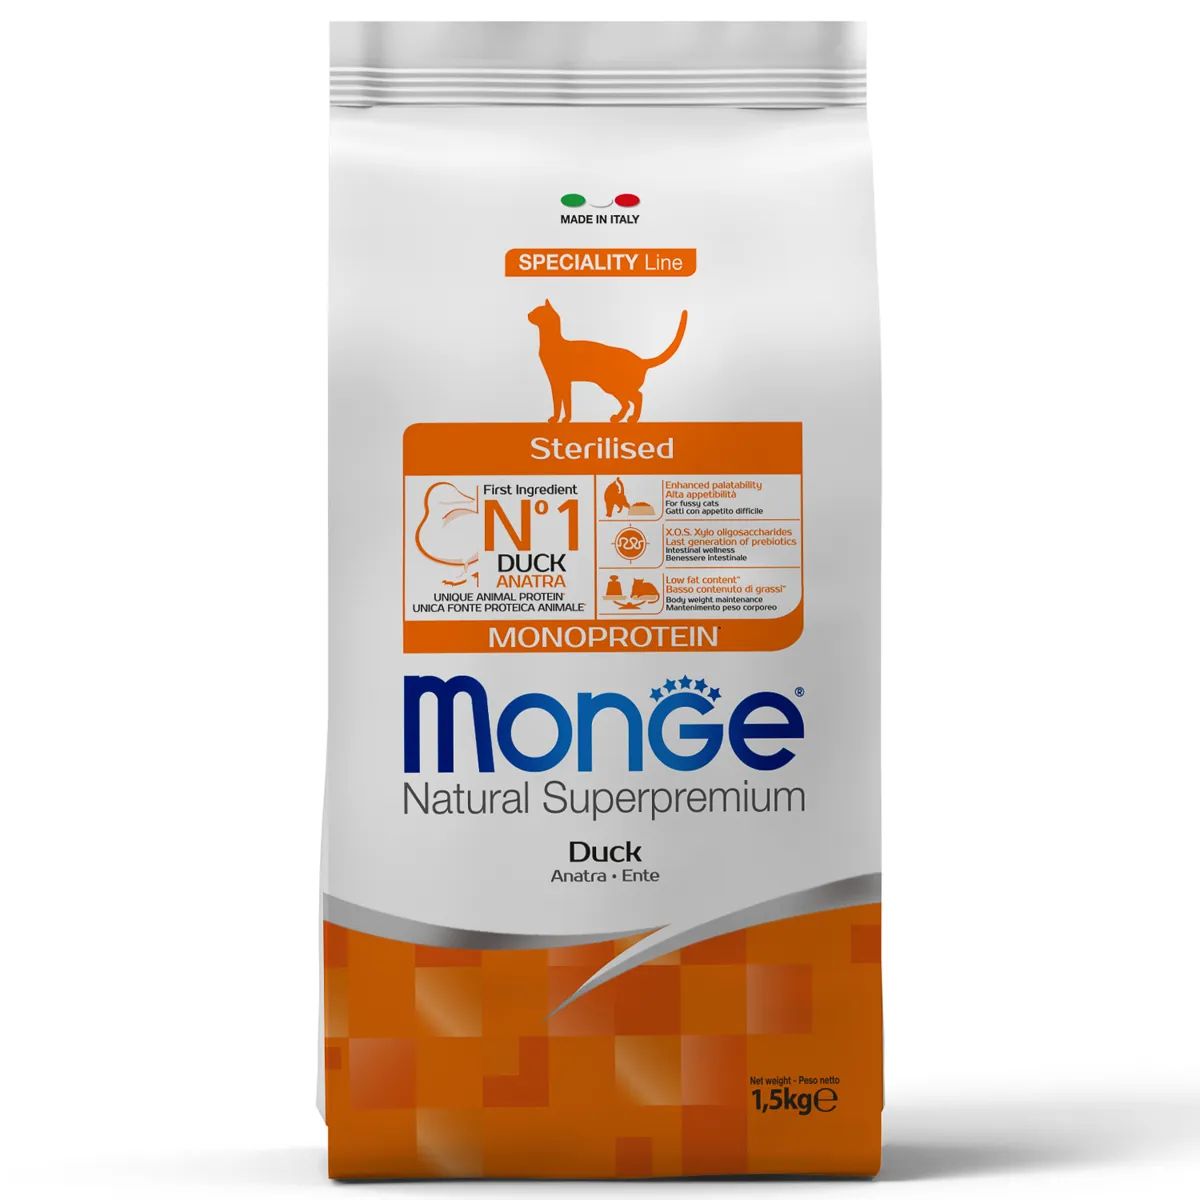 Сухой корм для кошек Monge Cat Speciality Line Monoprotein Sterilised, утка, 1,5кг